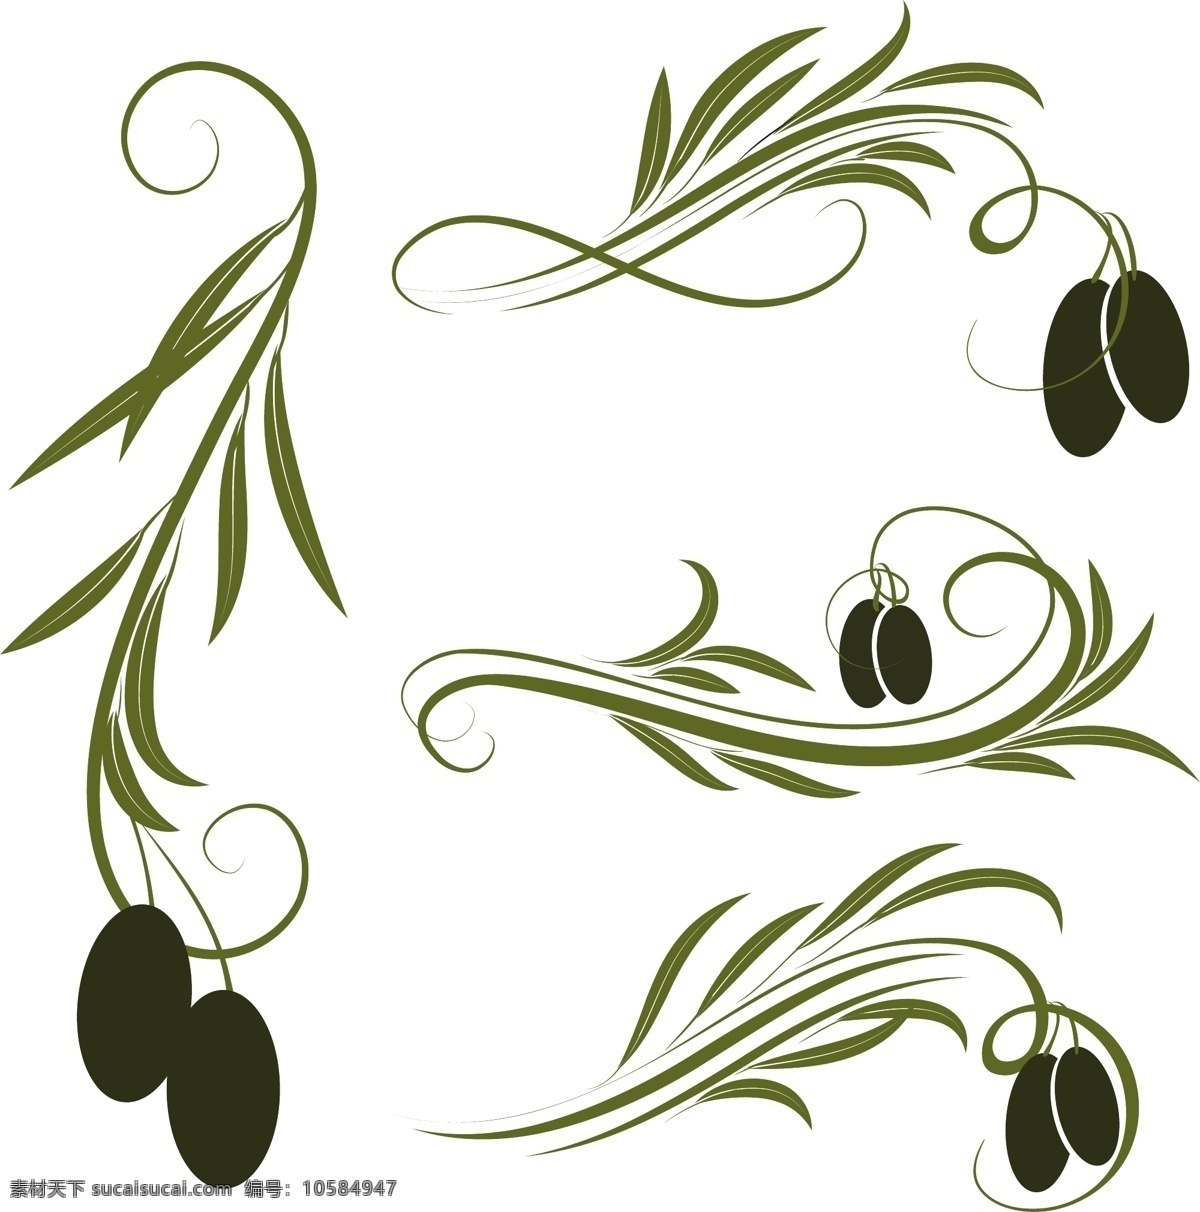 橄榄设计 橄榄花纹 橄榄叶 橄榄枝 橄榄 橄榄果实 橄榄油图标 橄榄广告 橄榄油广告 橄榄油